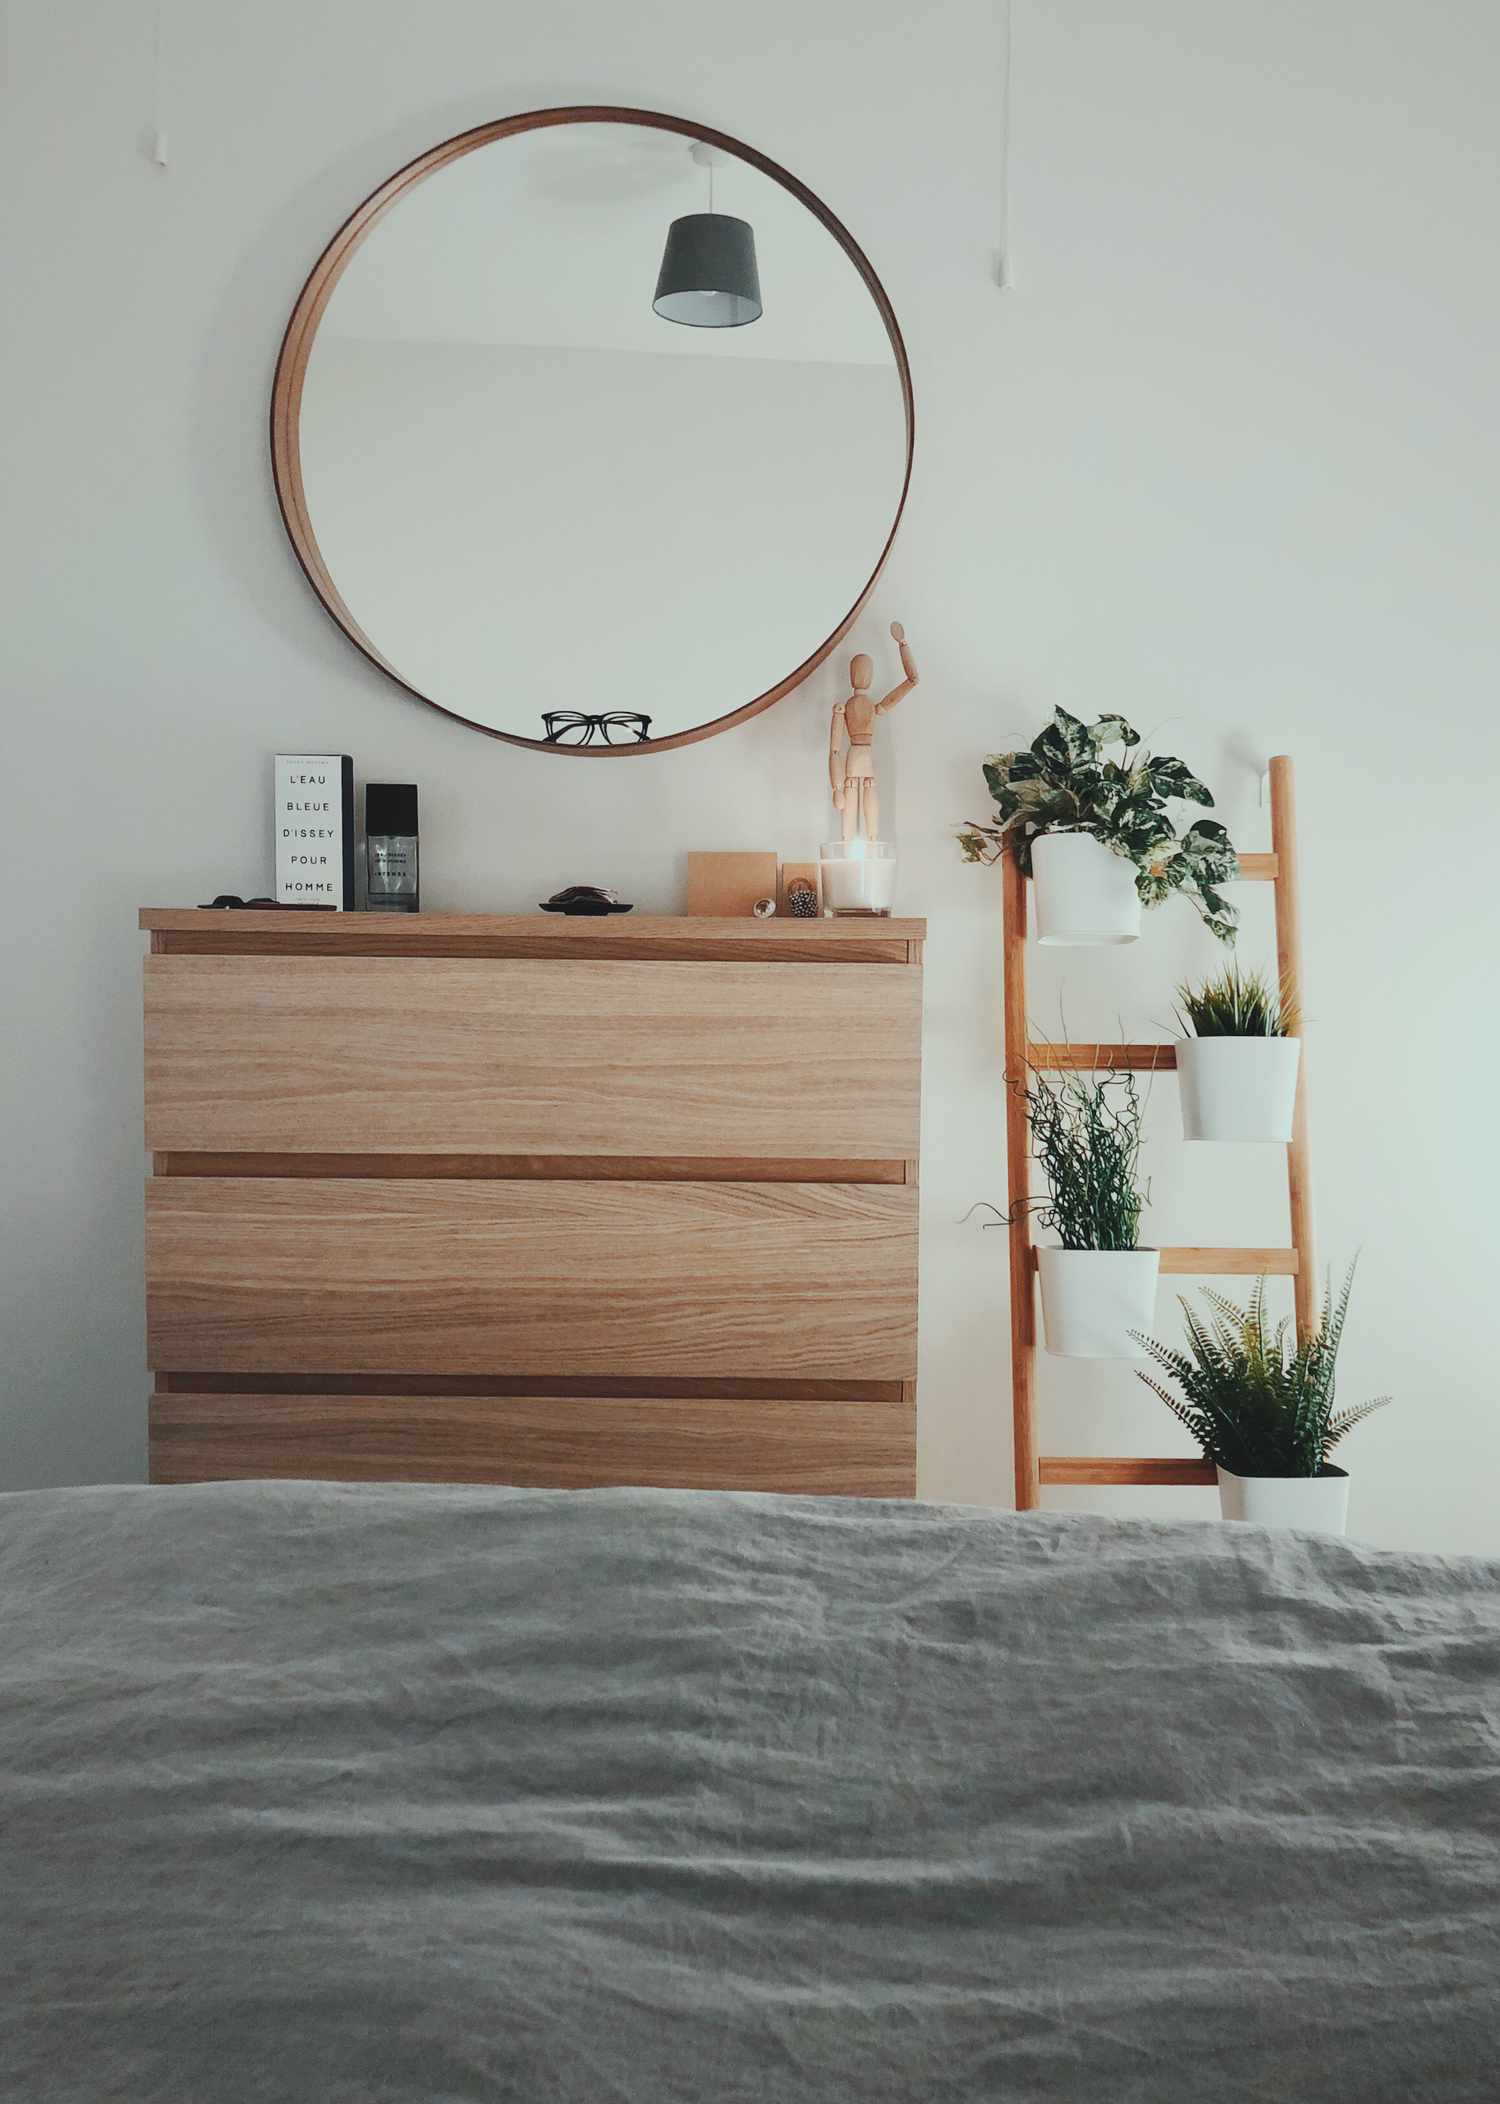 quarto com plantas, cômoda e um espelho redondo